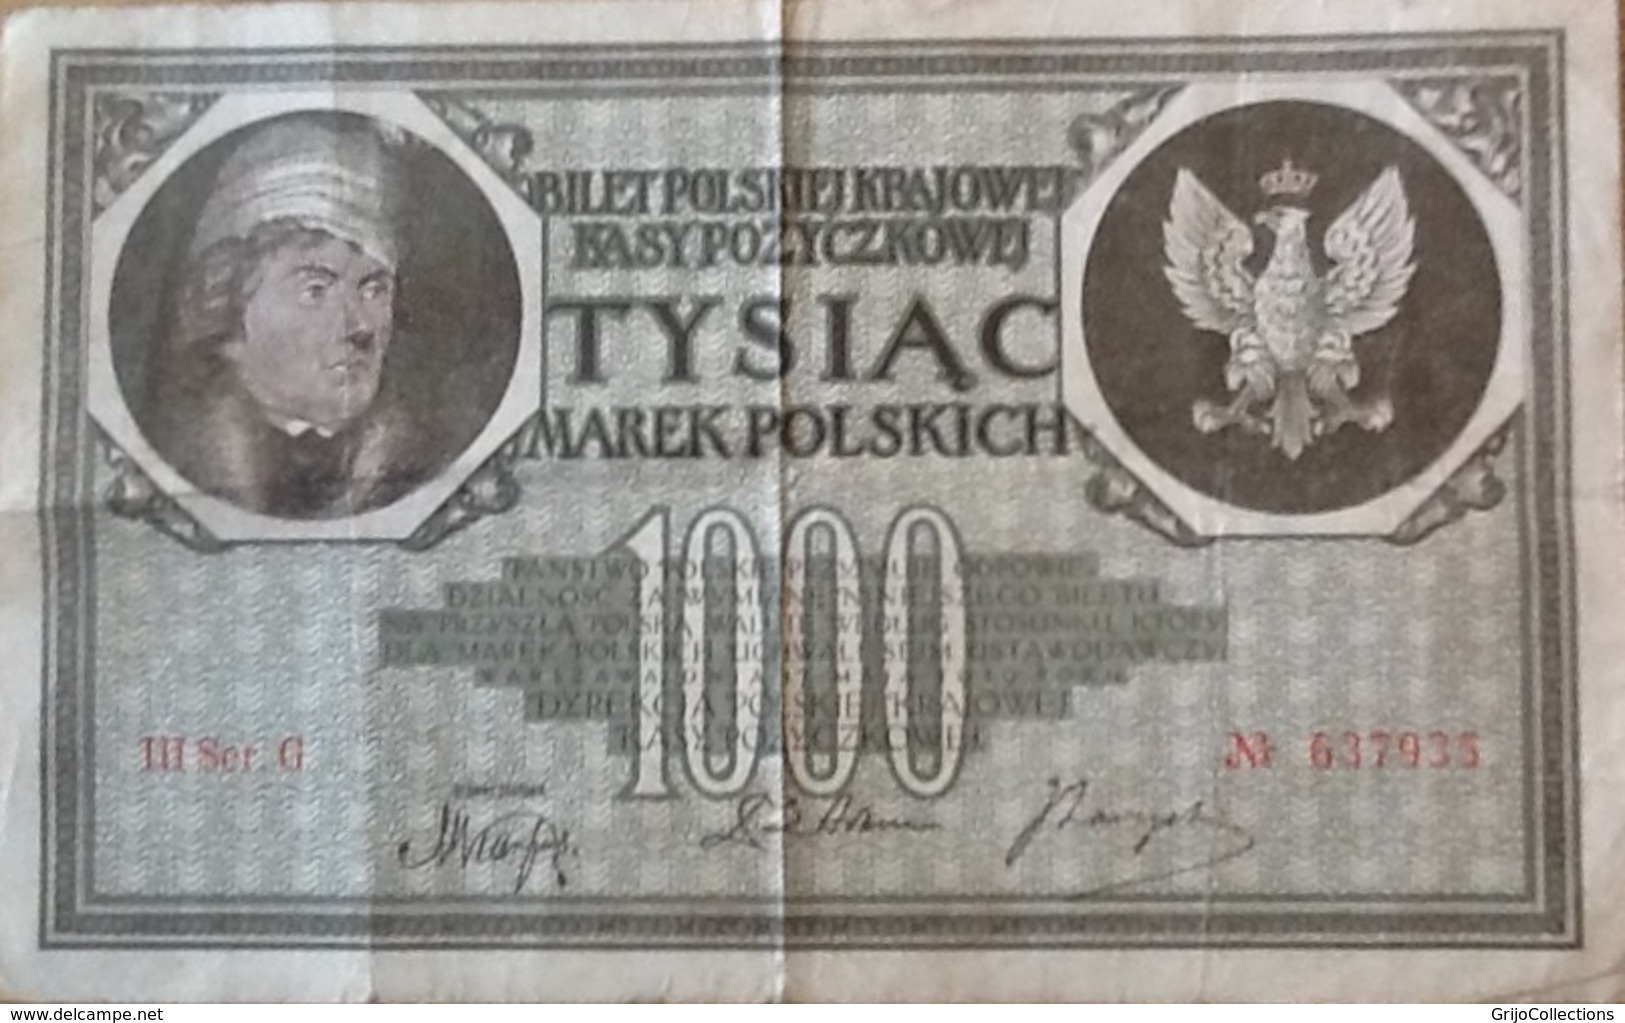 1000 Marek. Tysiac. 1919. Billet De Banque. Banknote. Pologne. Poland. Polen. - Pologne